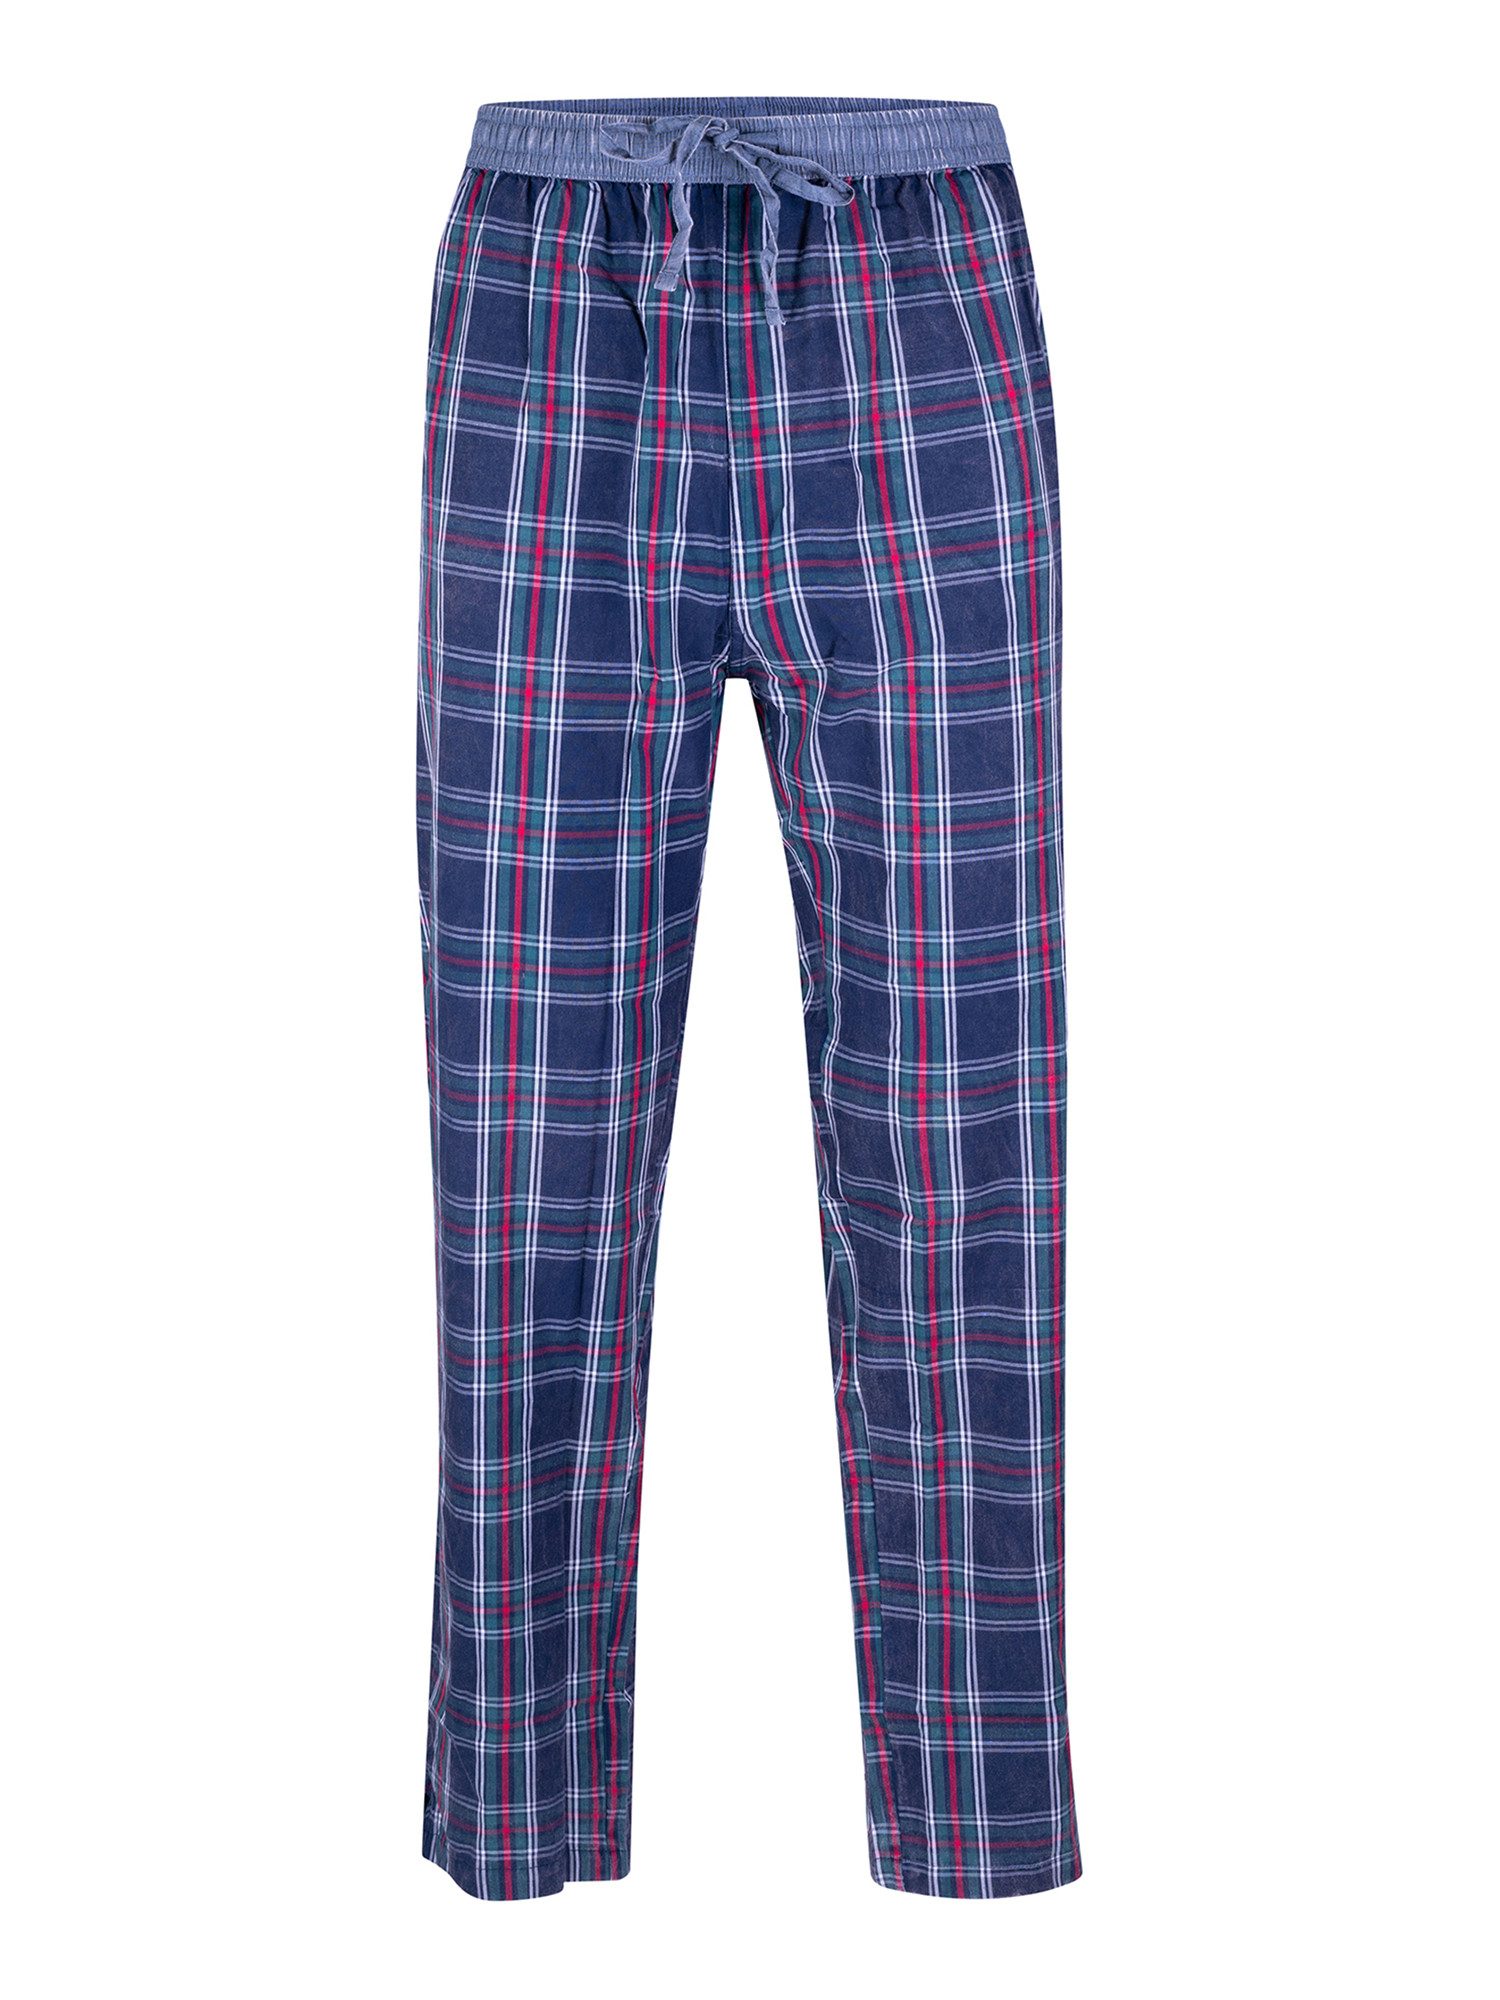 Luca David Pyjamahose Olden Glory Pants schlaf-hose pyjama schlafmode